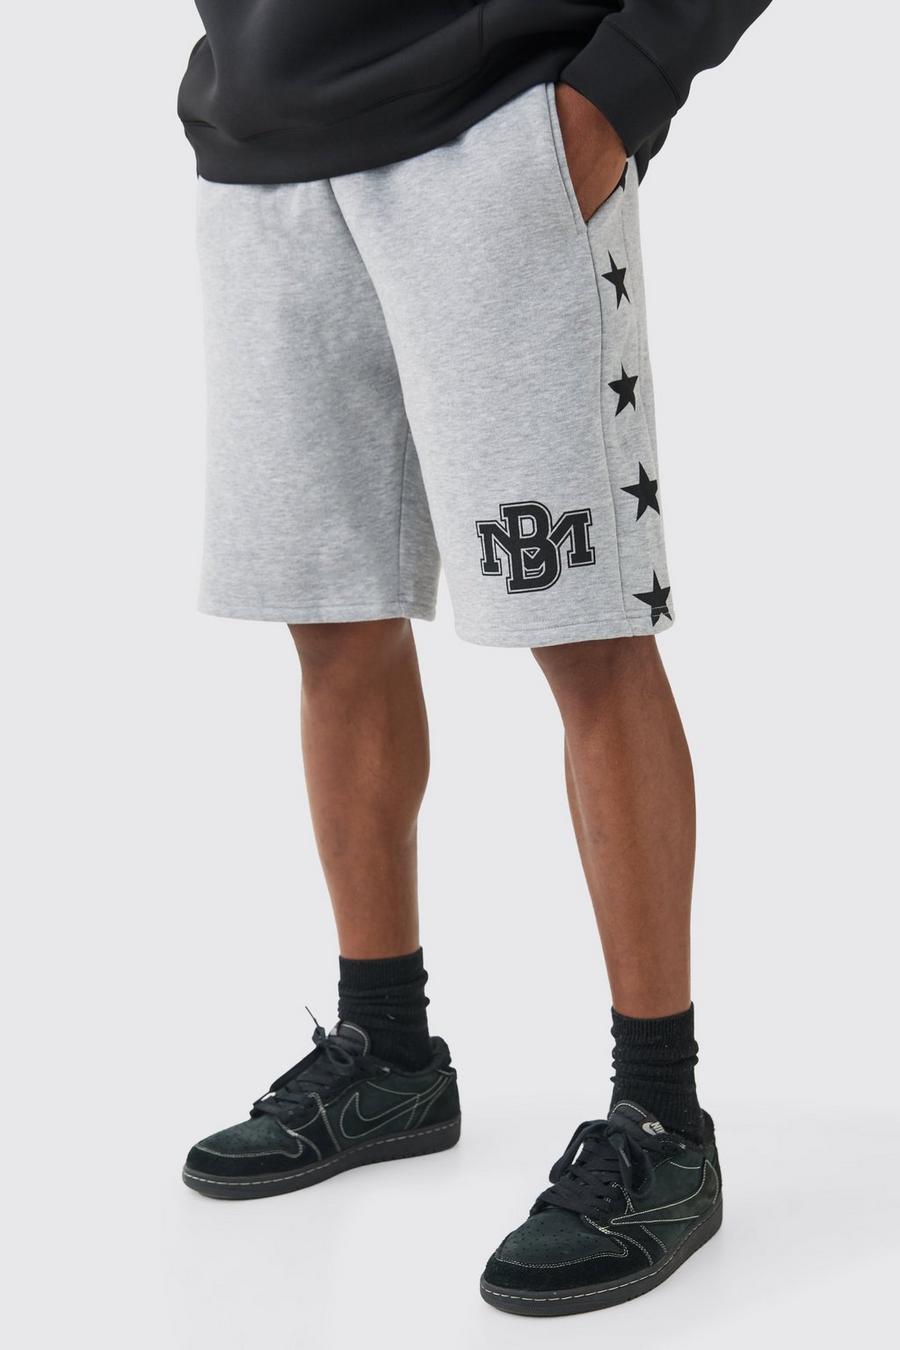 Lockere Shorts mit Sternen-Print, Grey